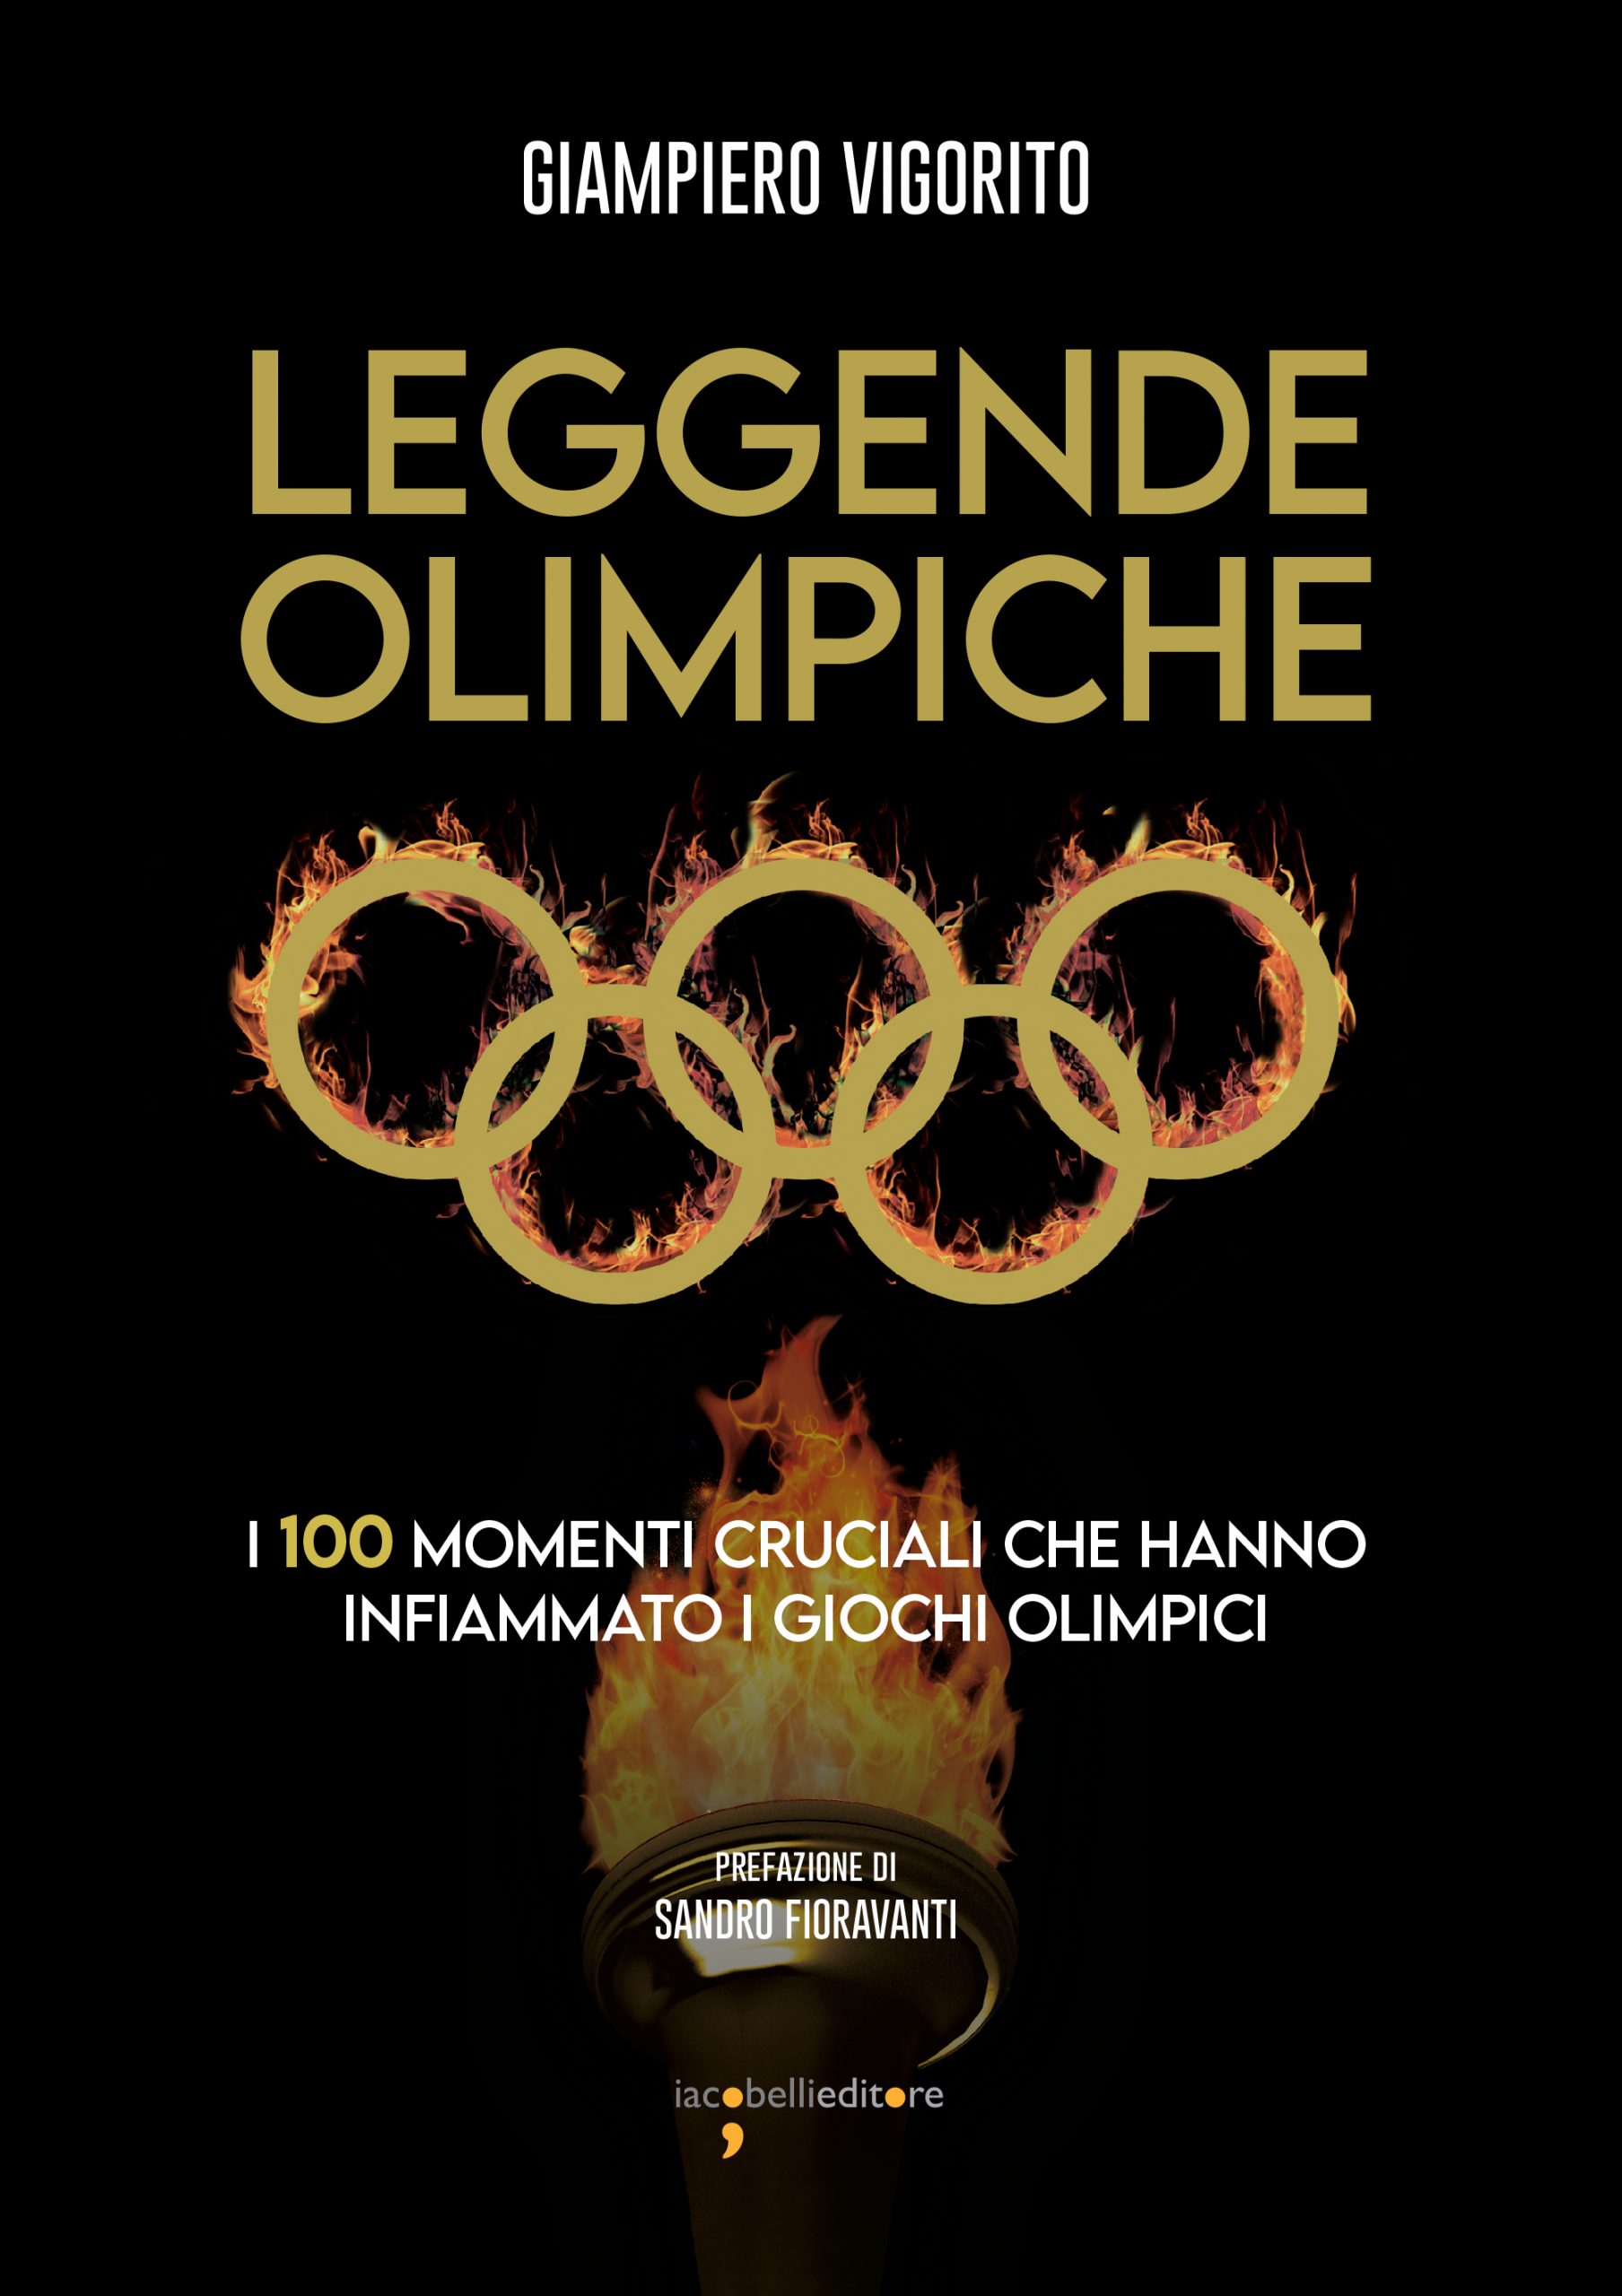 Leggende olimpiche, il volume di Giampiero Vigorito dedicato ai Giochi